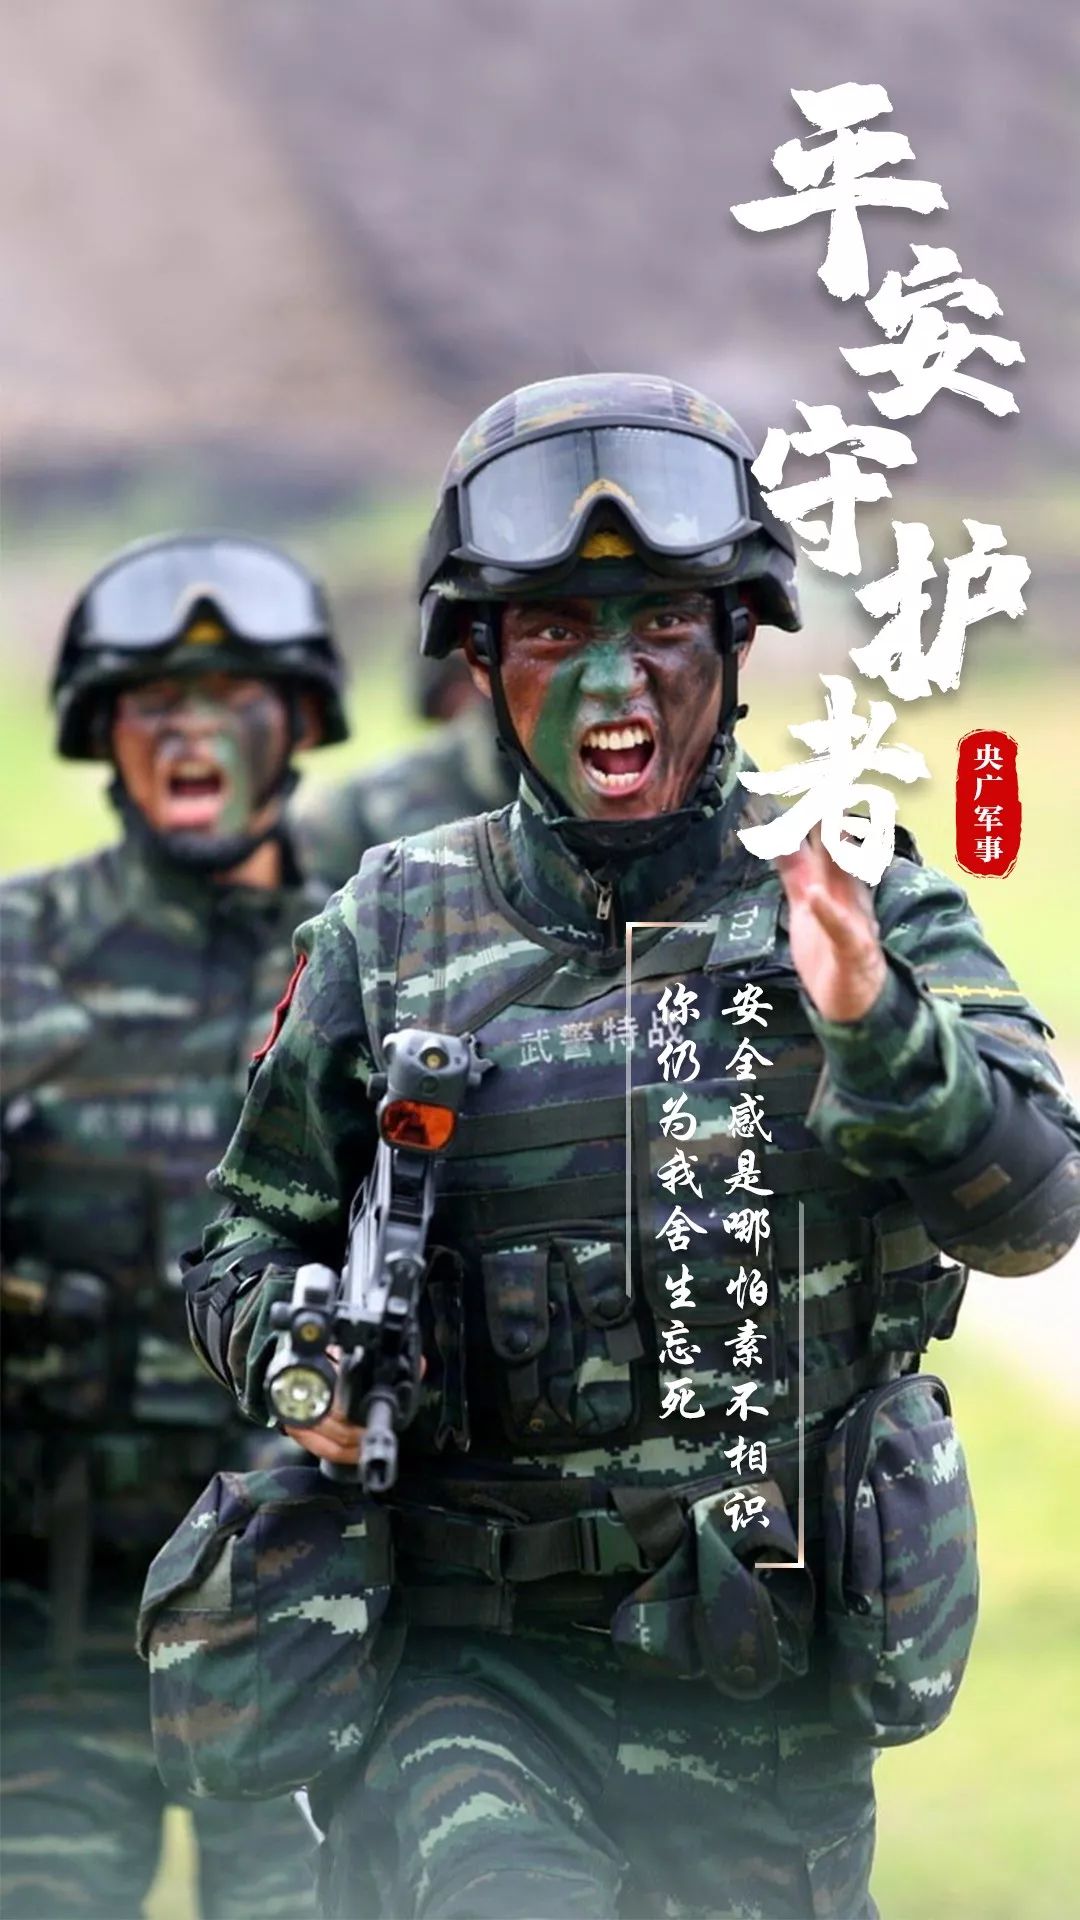 绝美壁纸丨致敬中国军人:因为有你们,我们夜夜平安